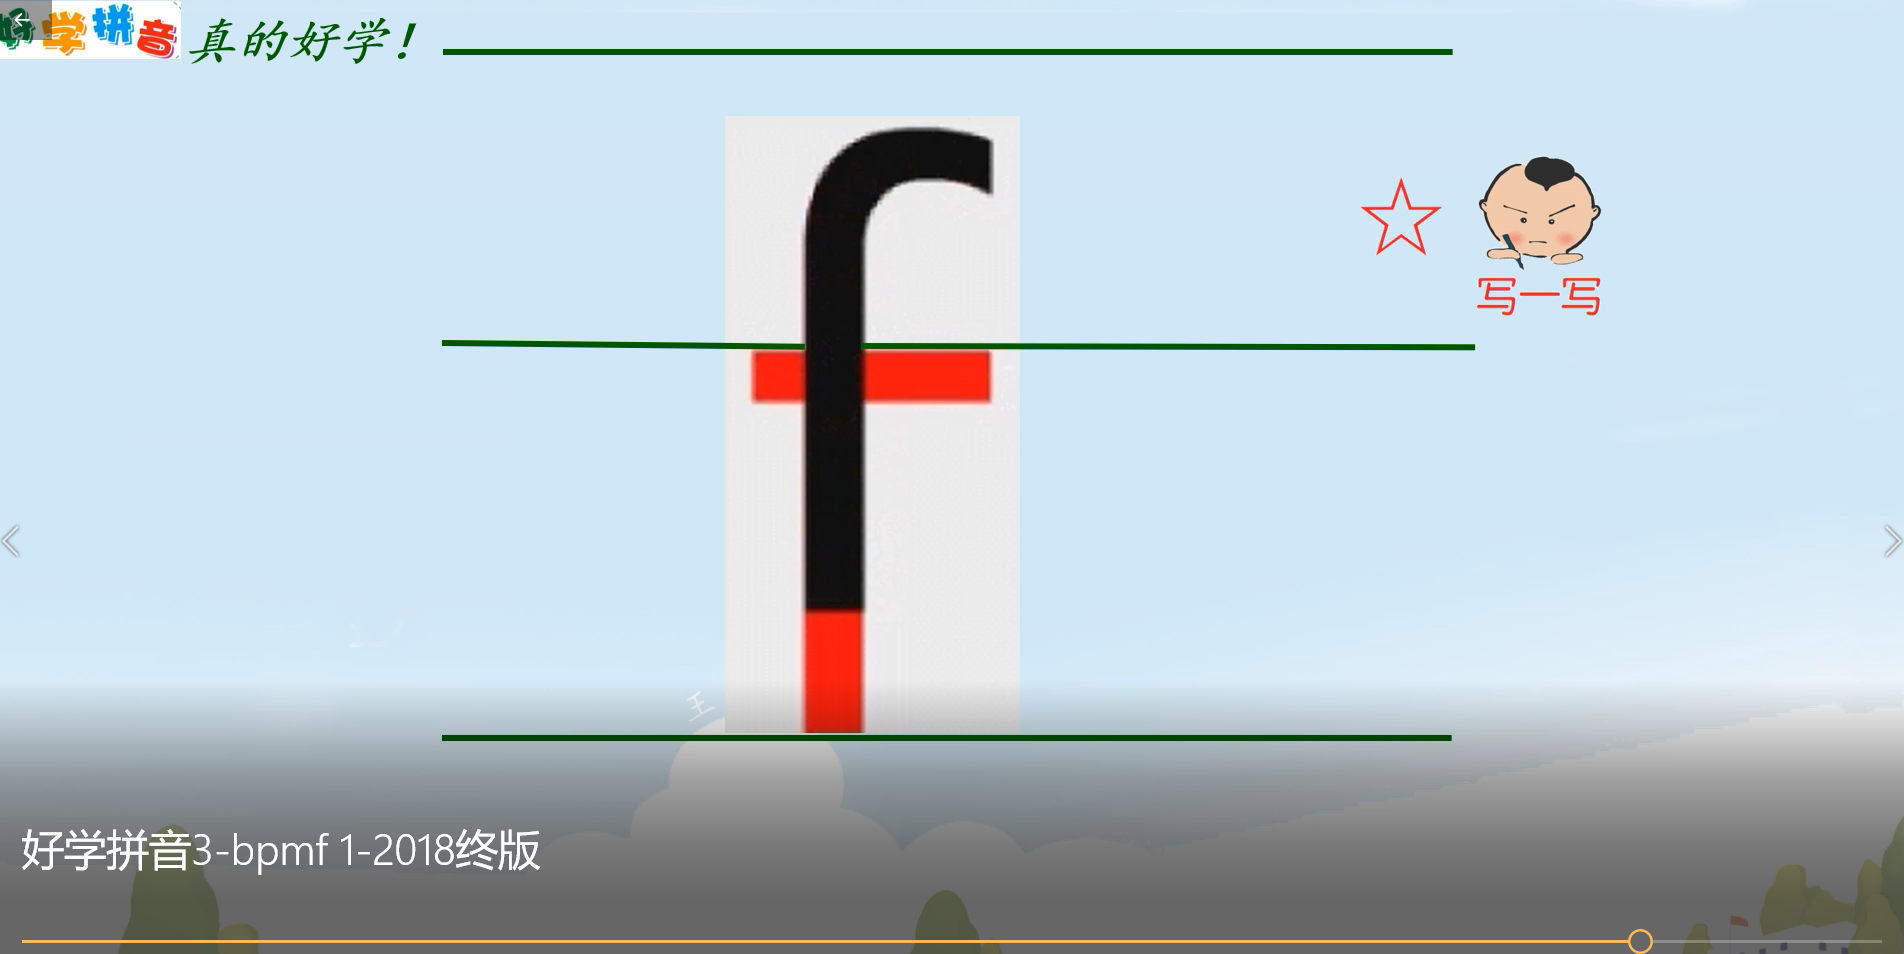 汉语拼音fo有几种音调